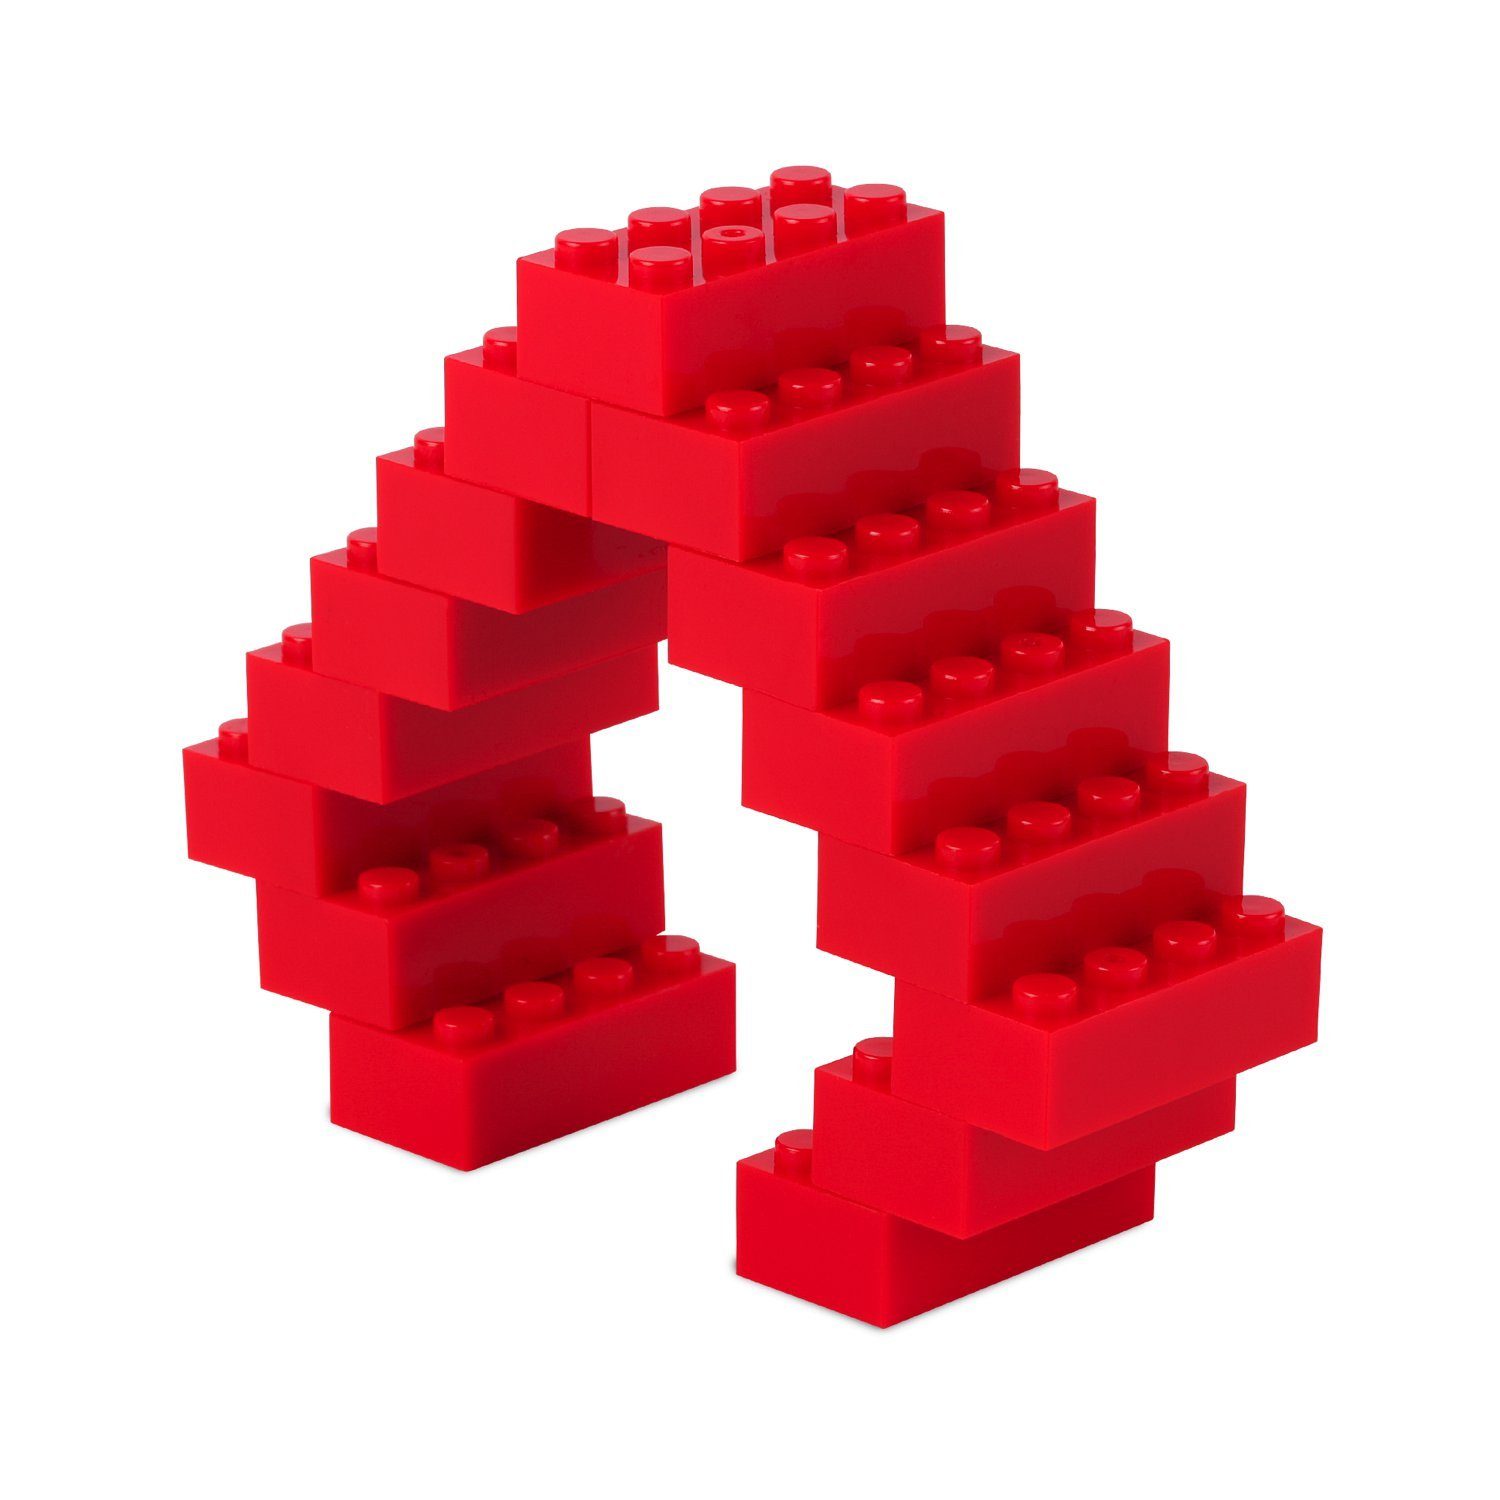 Herstellern Platte Set), Box-Set Steinen allen 520 Farben Katara + mit + Konstruktionsspielsteine zu verschiedene Bausteine rot - (3er Box, Anderen Kompatibel